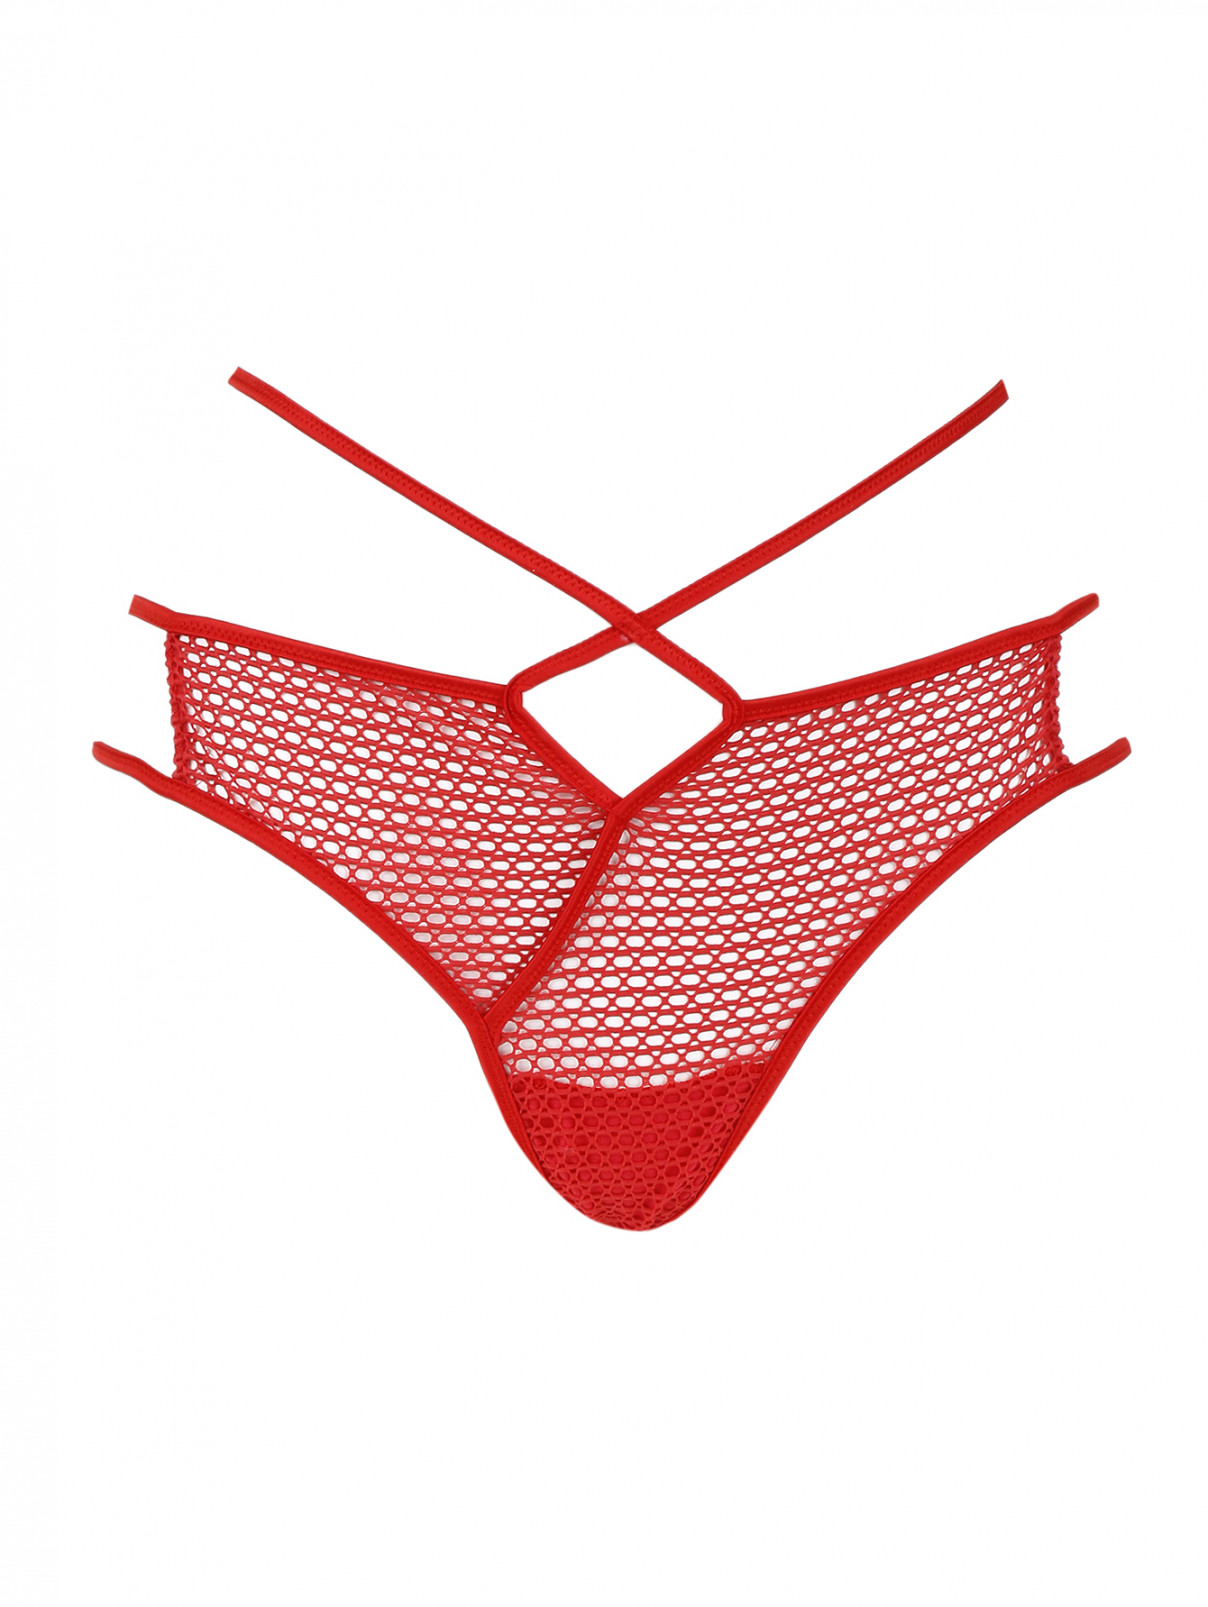 Трусы-слип с декоративным бантом Rosapois  –  Общий вид  – Цвет:  Красный